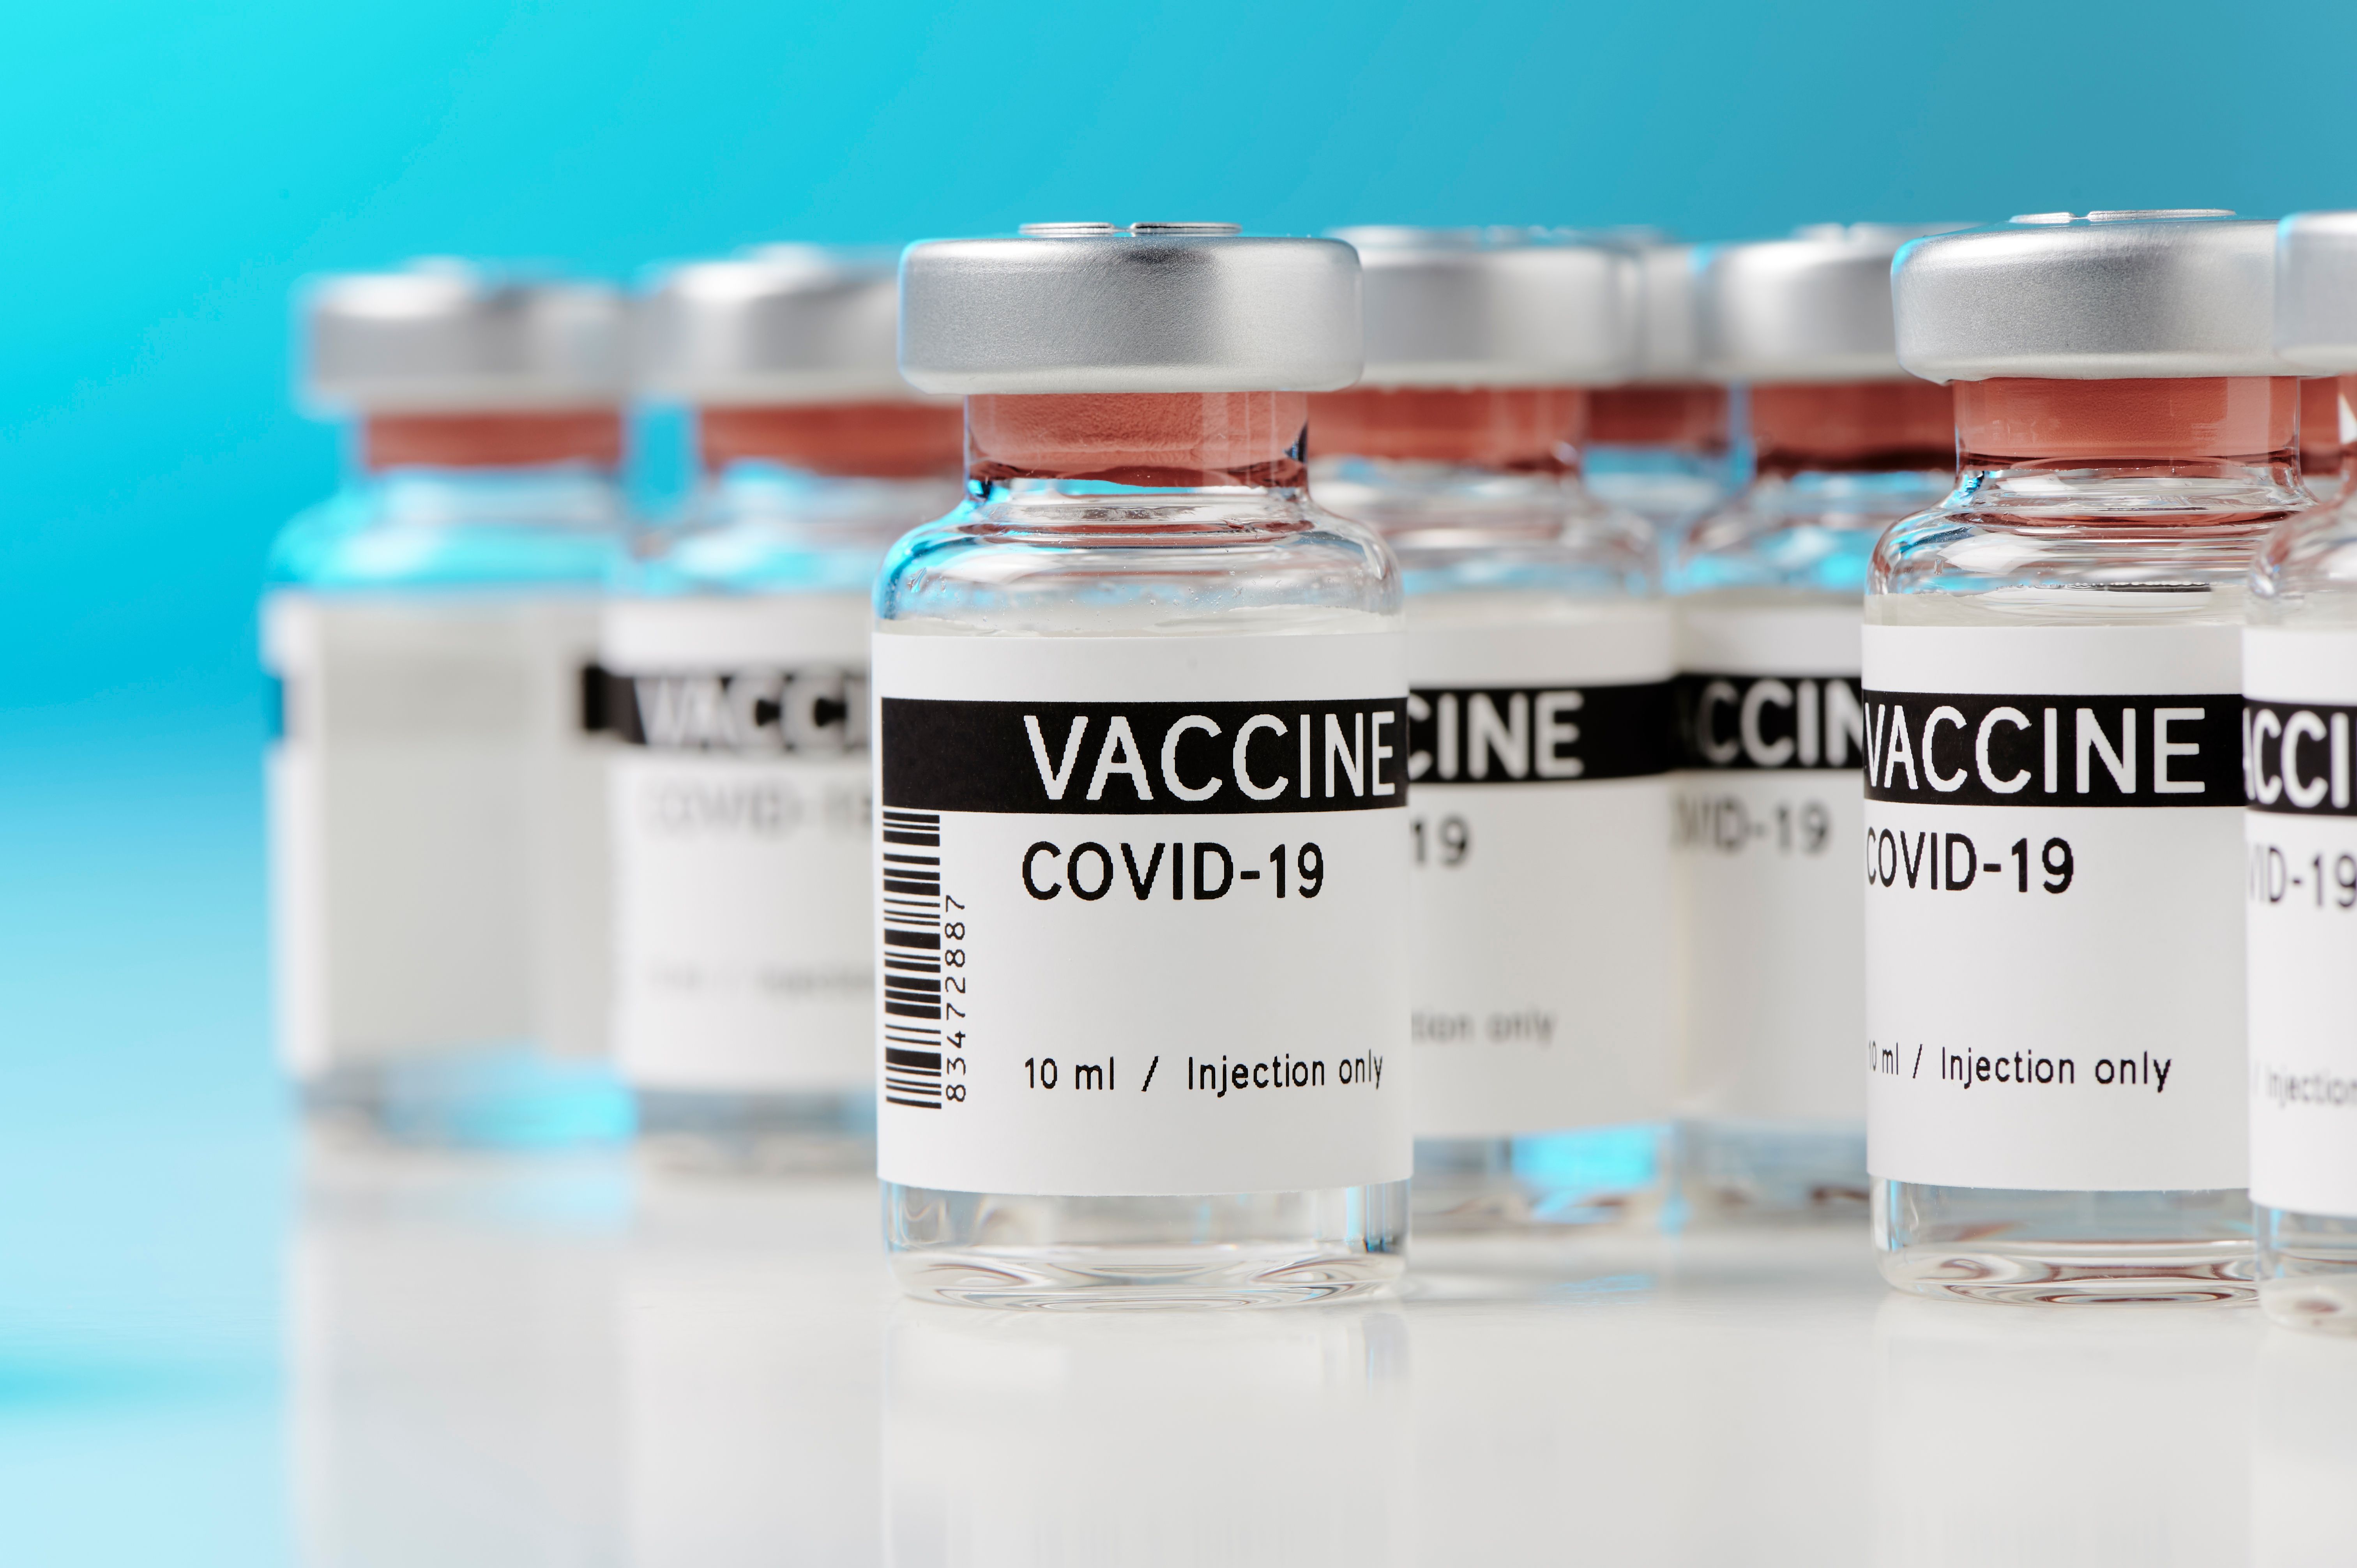 a covid-19 vaccine